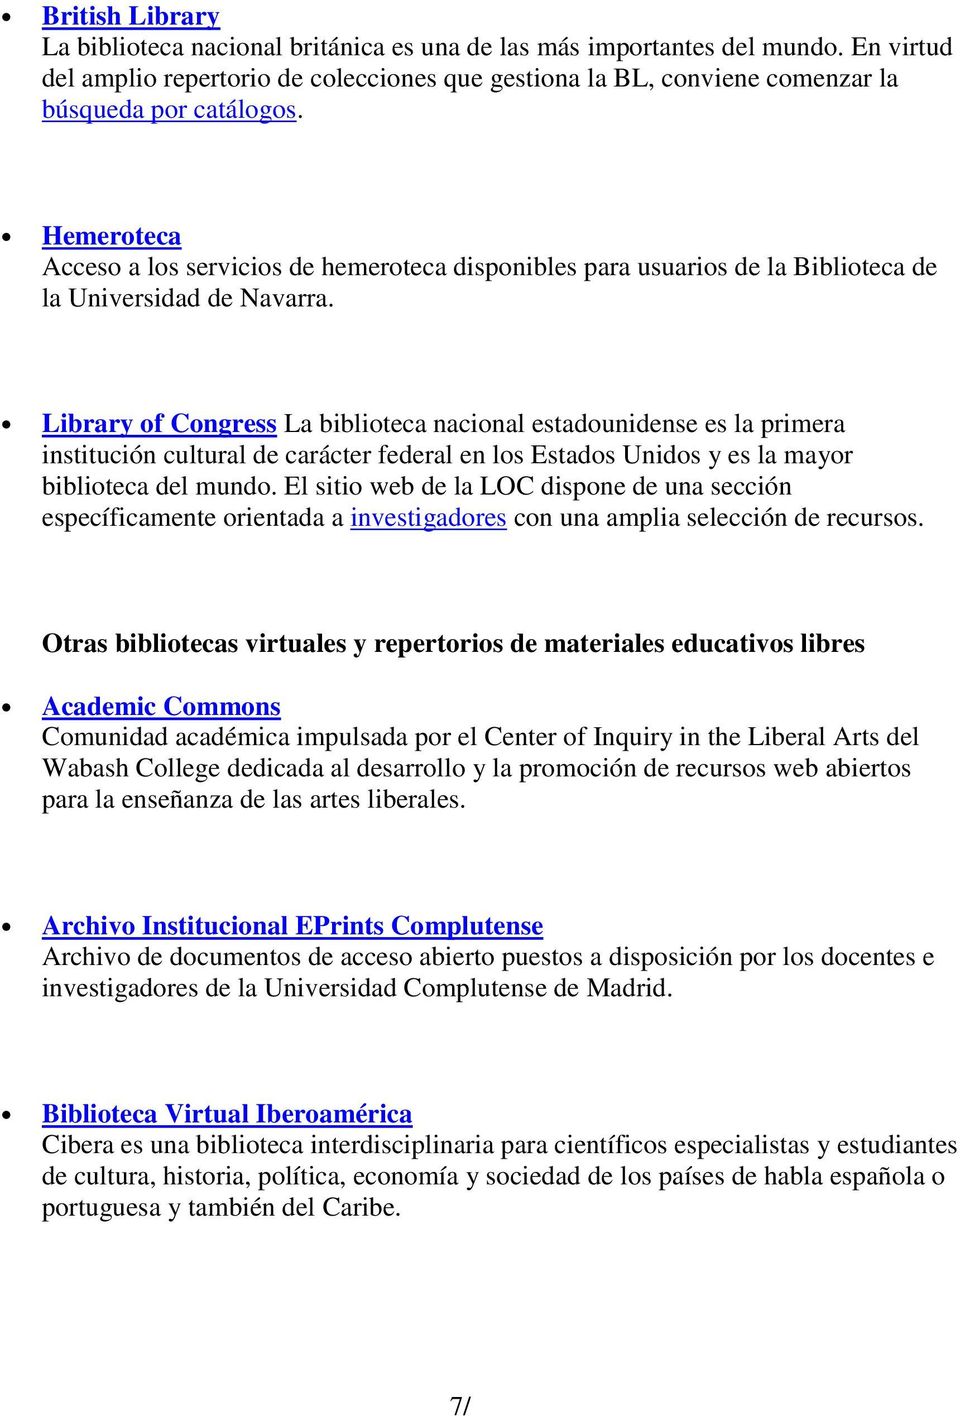 Hemeroteca Acceso a los servicios de hemeroteca disponibles para usuarios de la Biblioteca de la Universidad de Navarra.